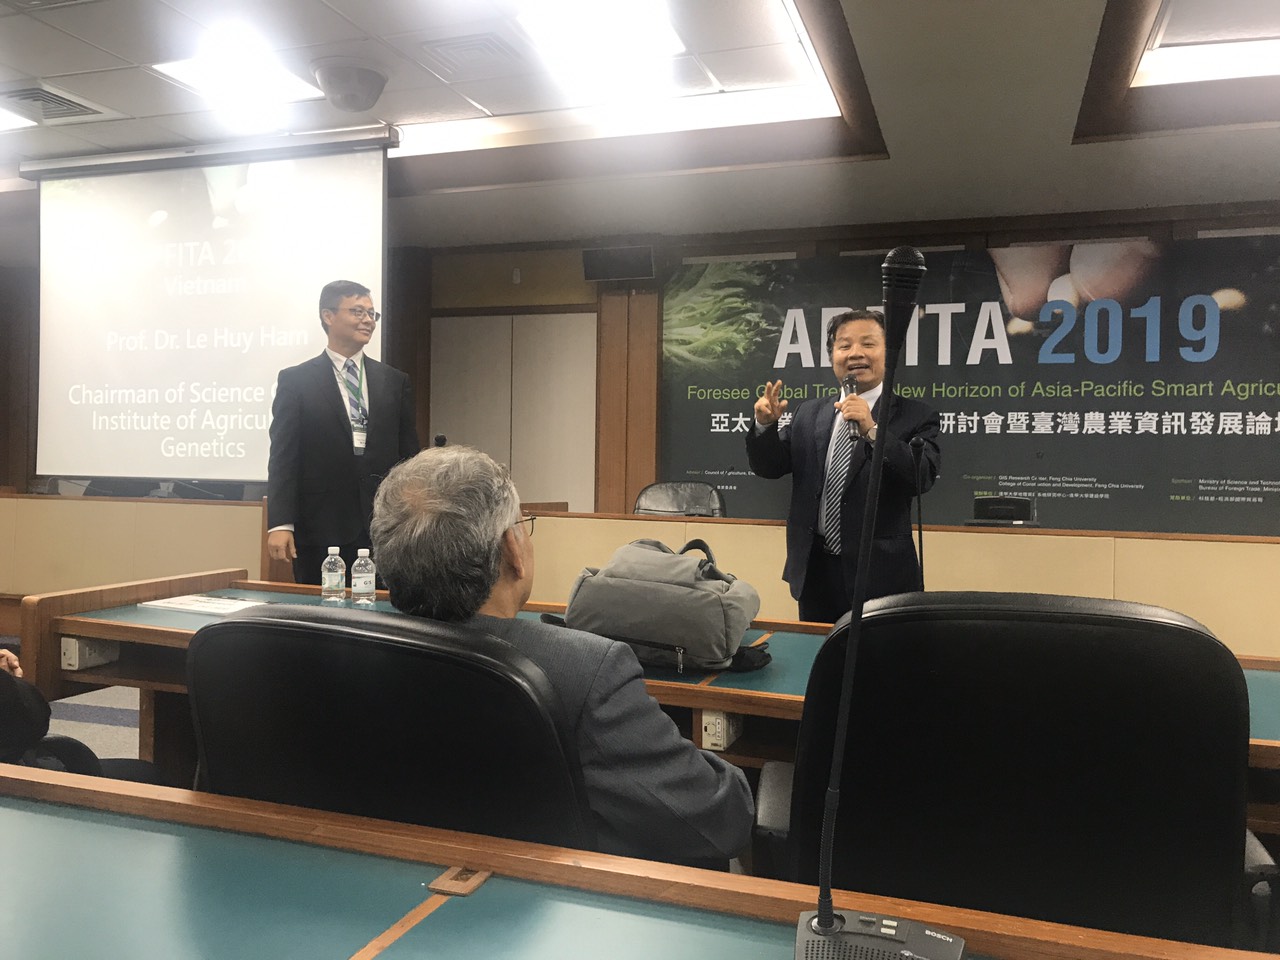 Nội dung hội thảo khoa học "Ứng dụng công nghệ thông tin trong lĩnh vực trồng trọt, chăn nuôi, thủy sản và quản lý nông nghiệp" tại Đài Loan